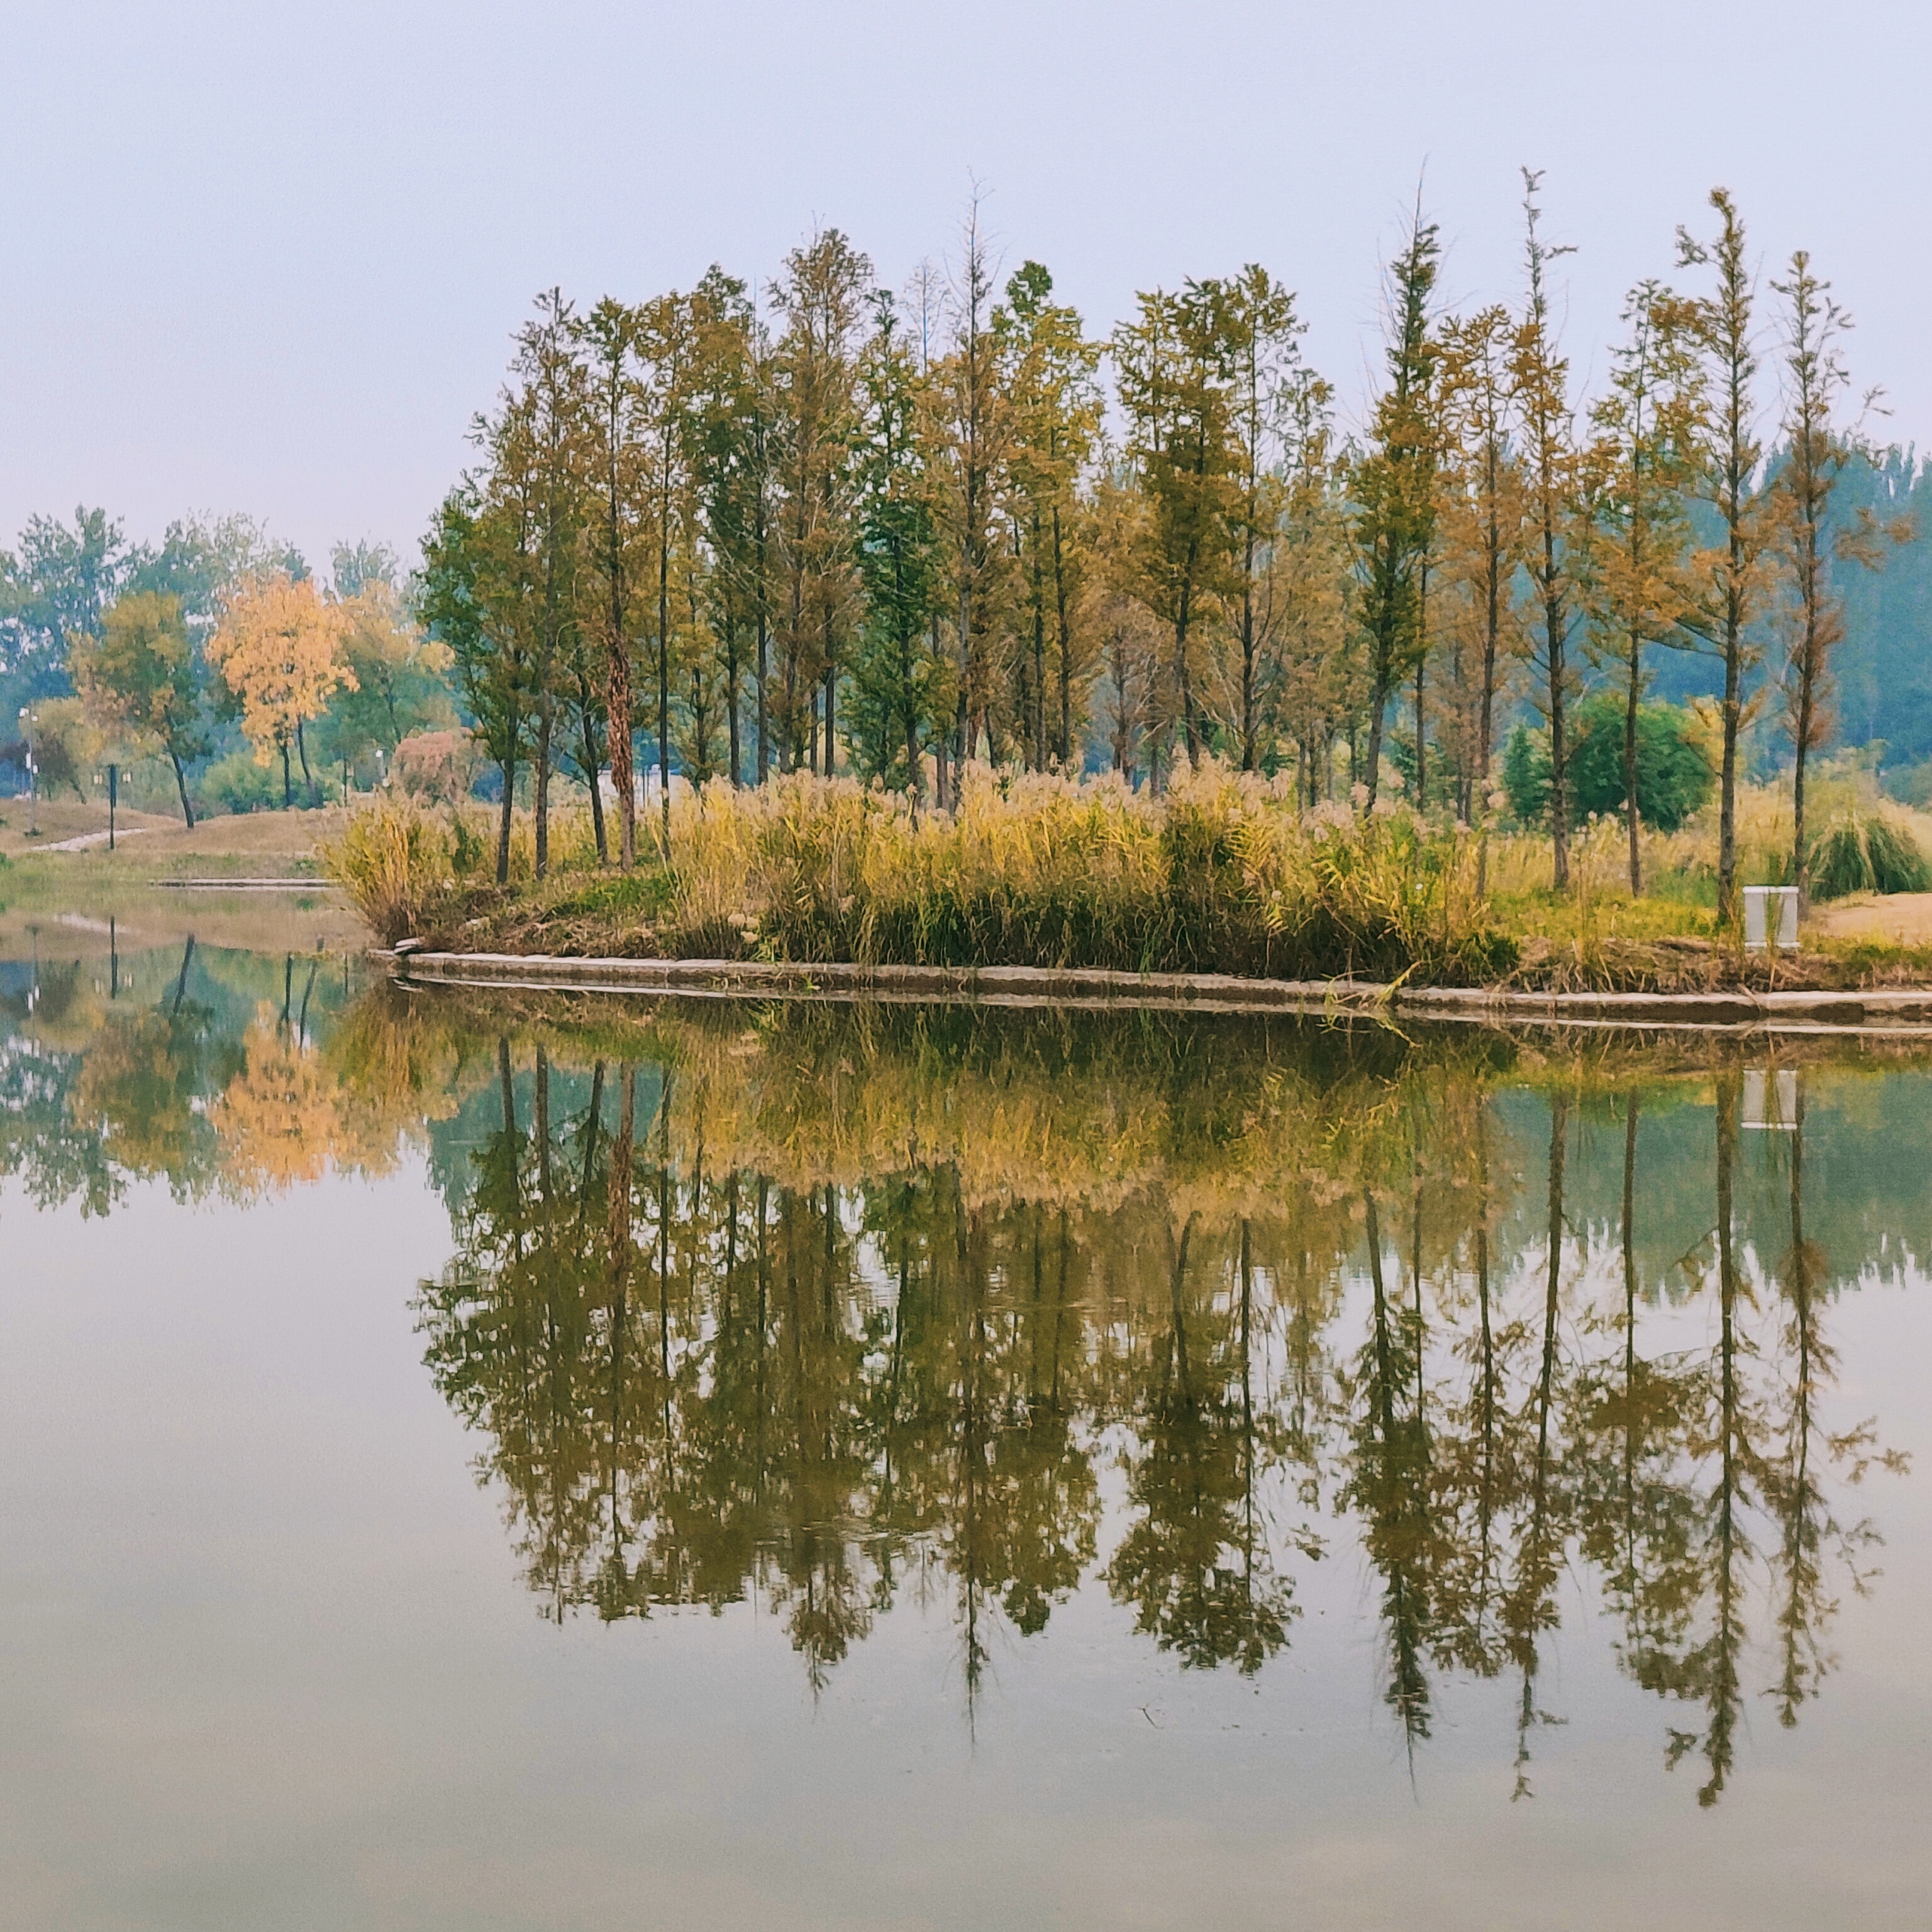 2022年10月14日拍摄地点:禹州市森林植物园手机随拍:贺景昌